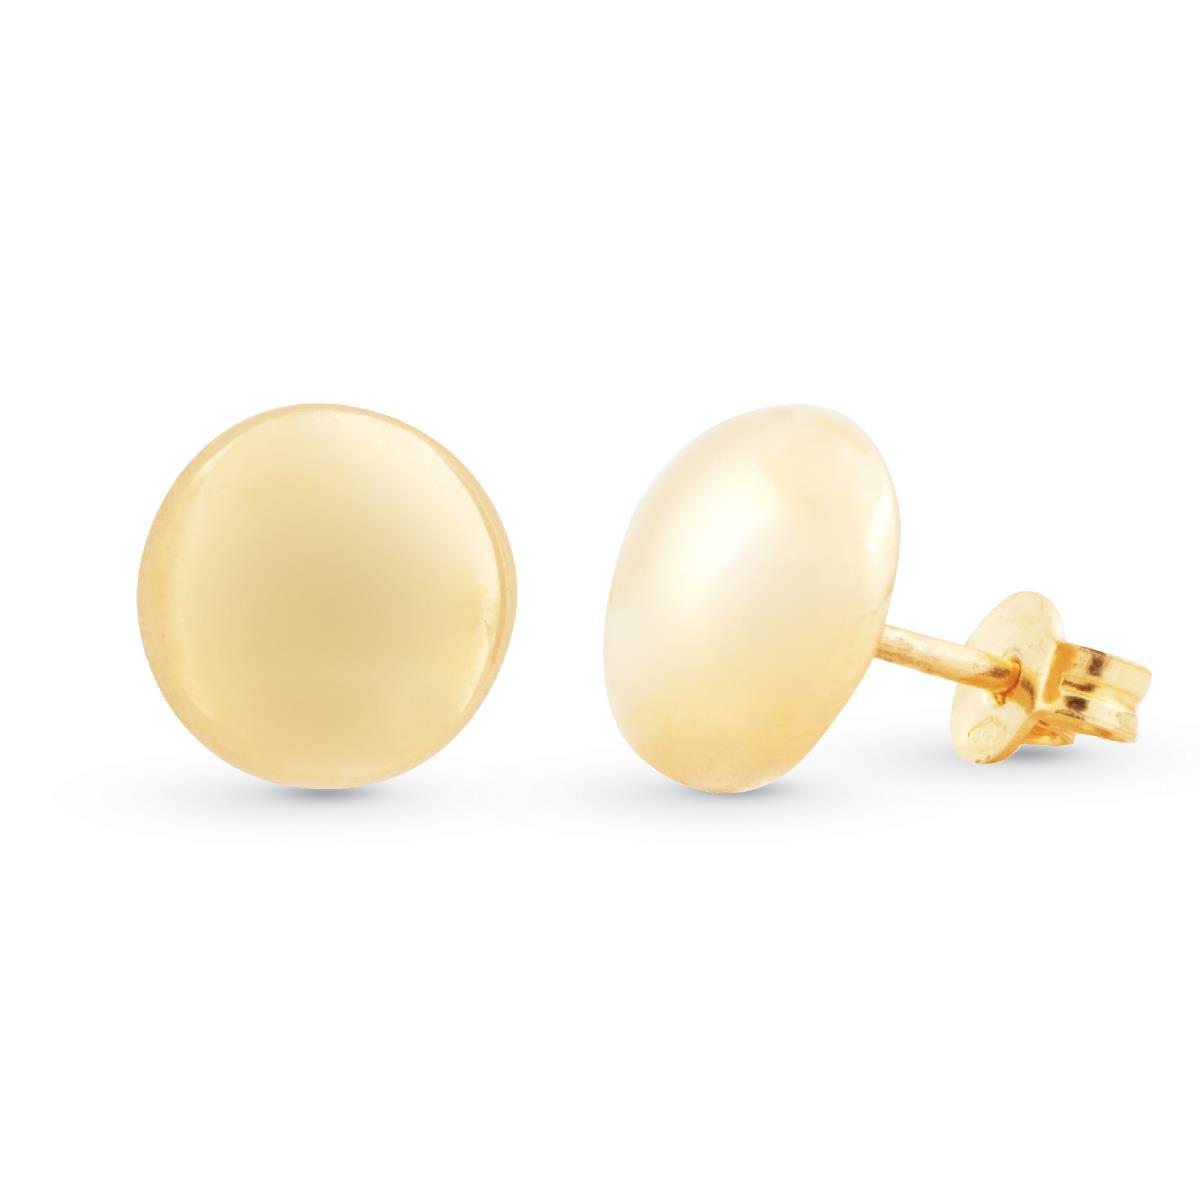 Boule earrings in 18kt polished yellow gold - OP0032-LG